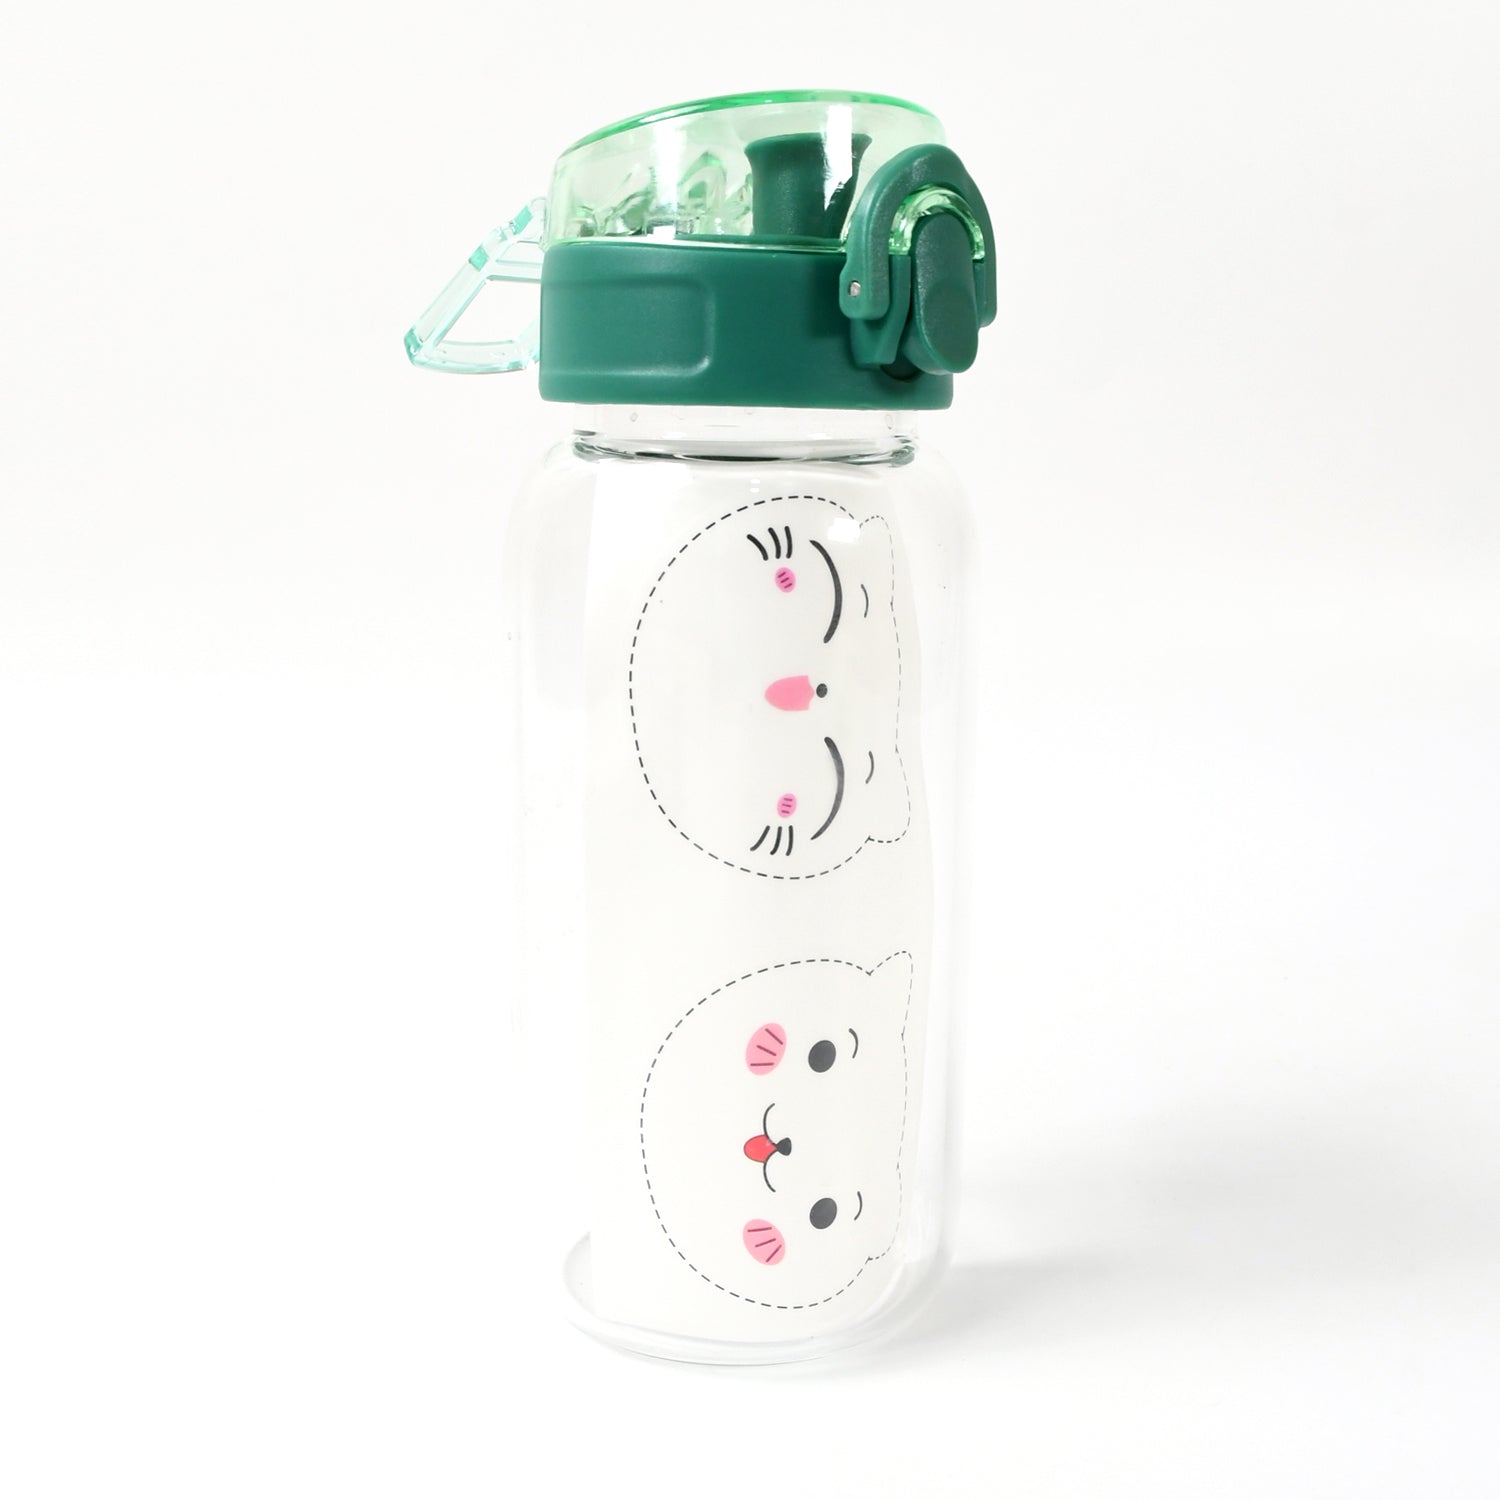 12713 Anti-Leak Glass Water Bottle, Crystal Glass Water Bottle For Kids, Stylish Water Bottle with Sipper